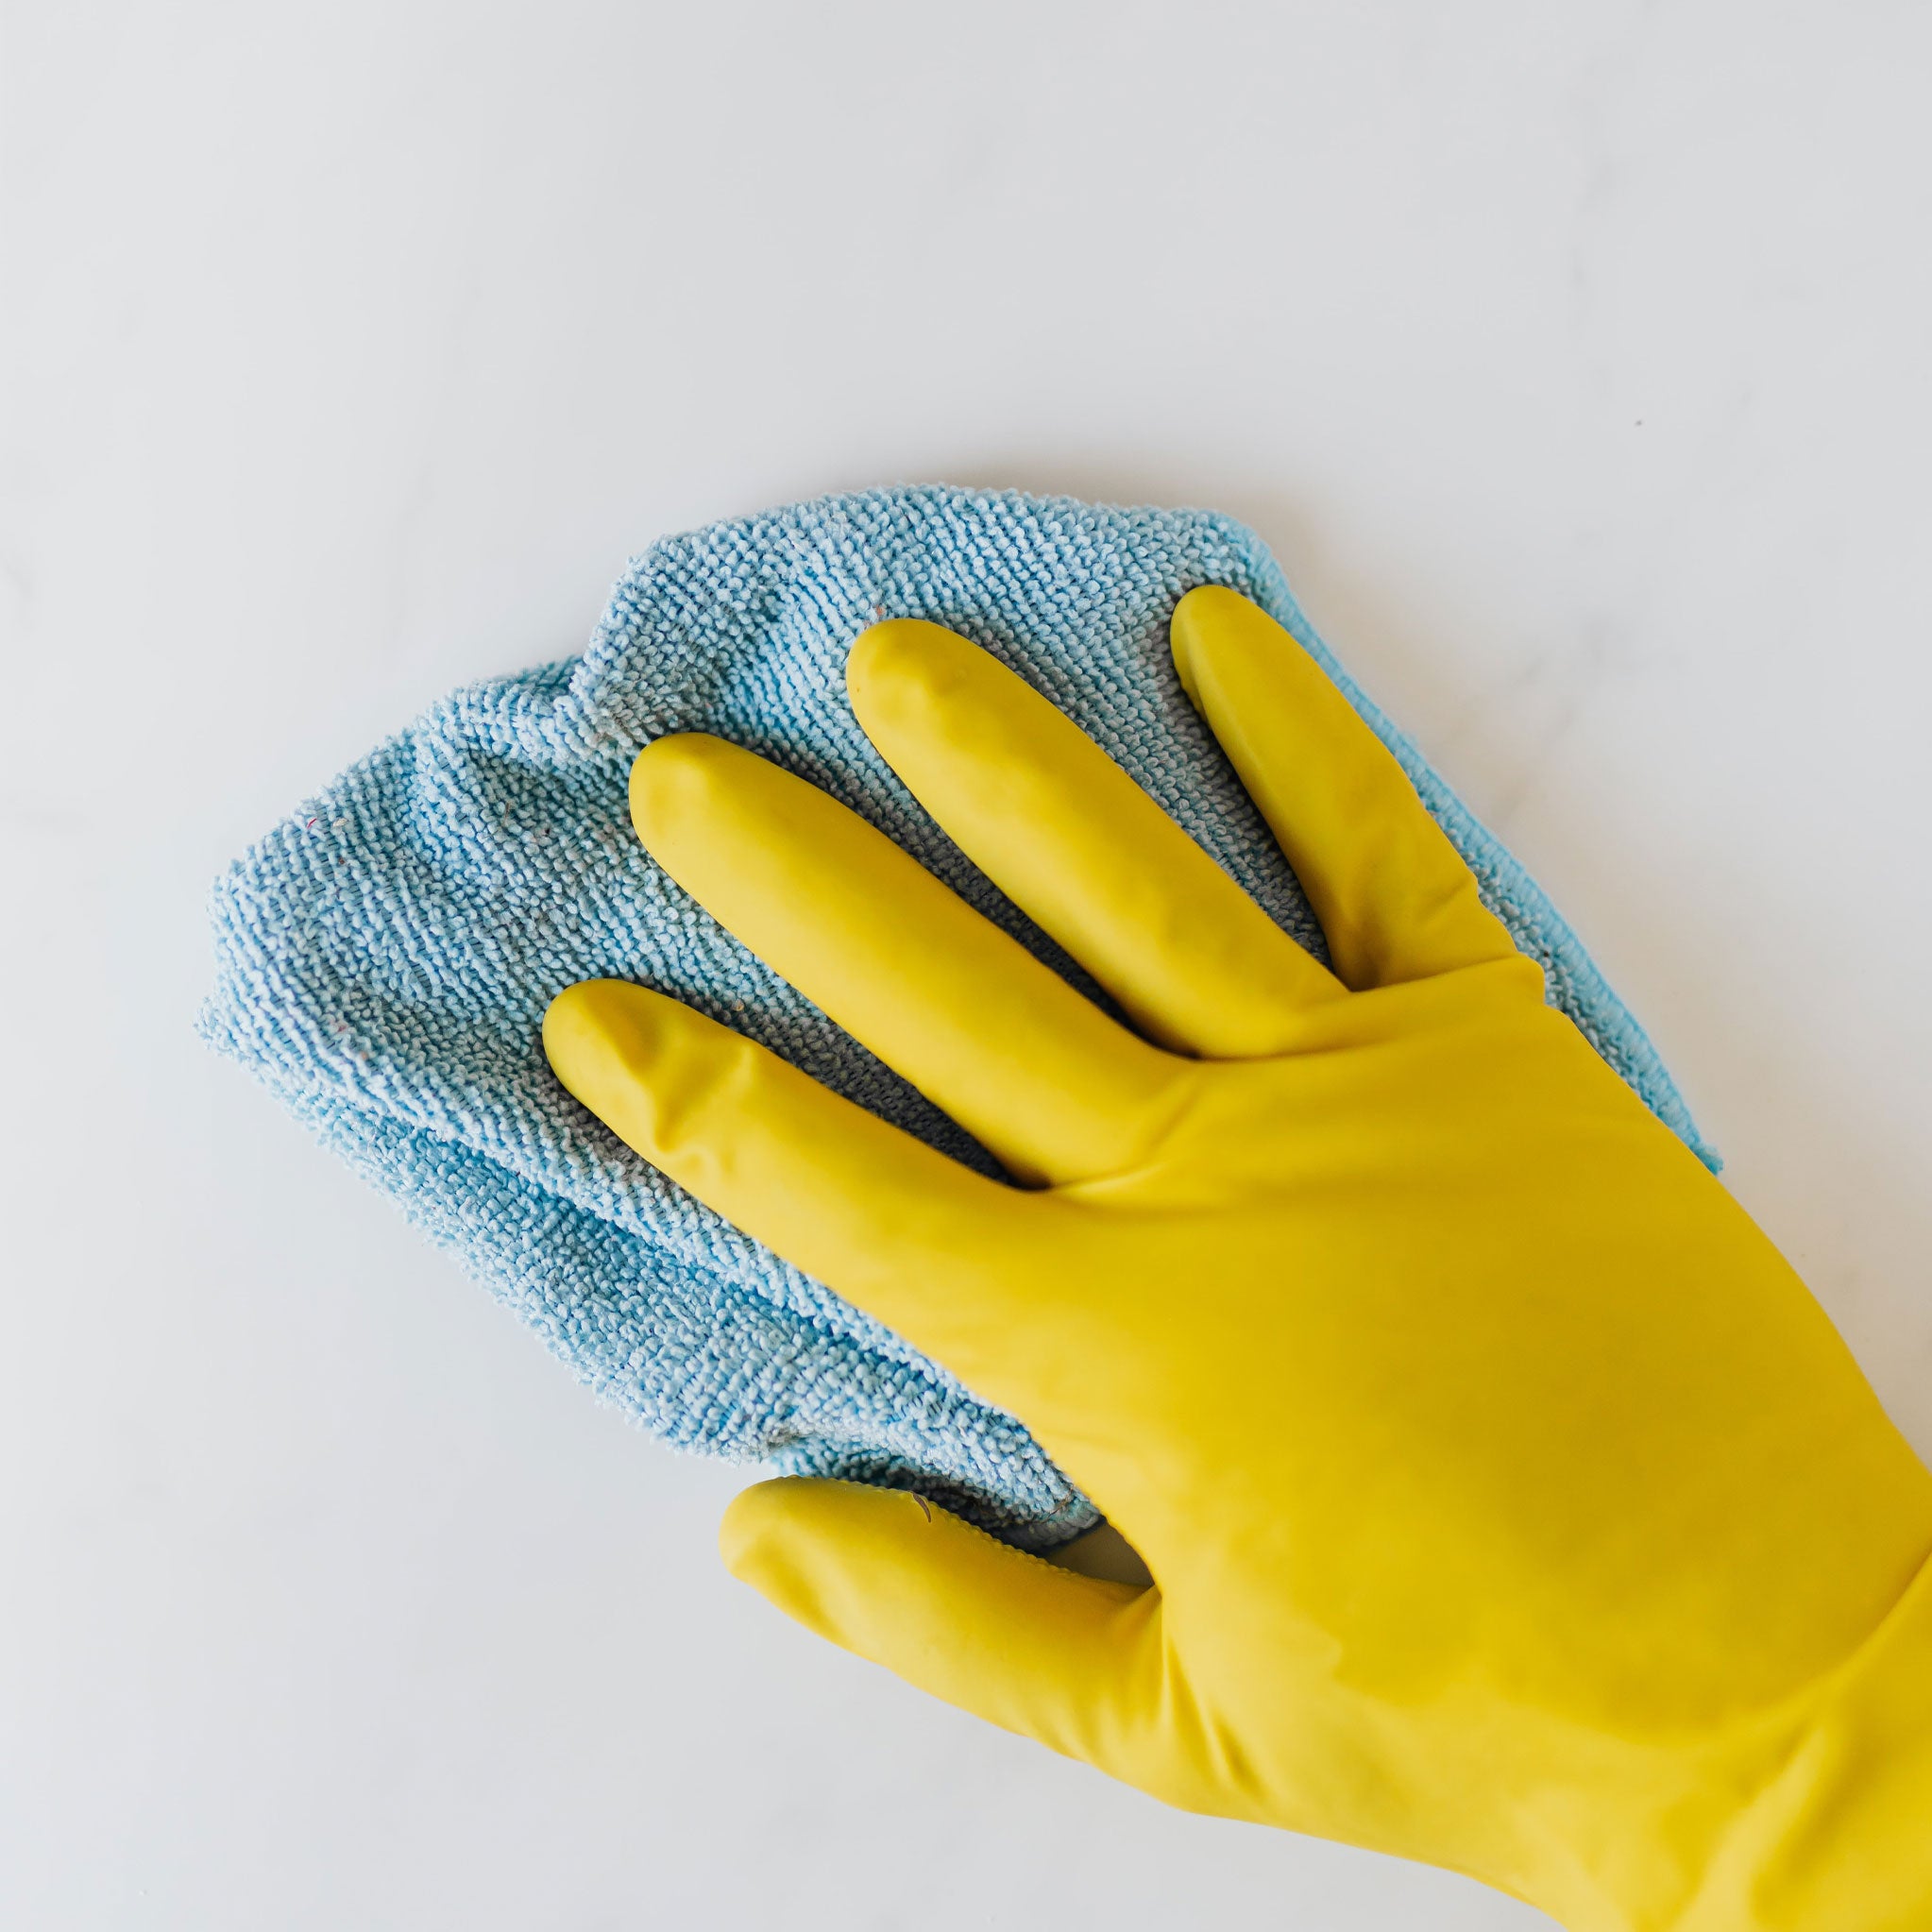 Hand med gul diskhandske som rengör en yta